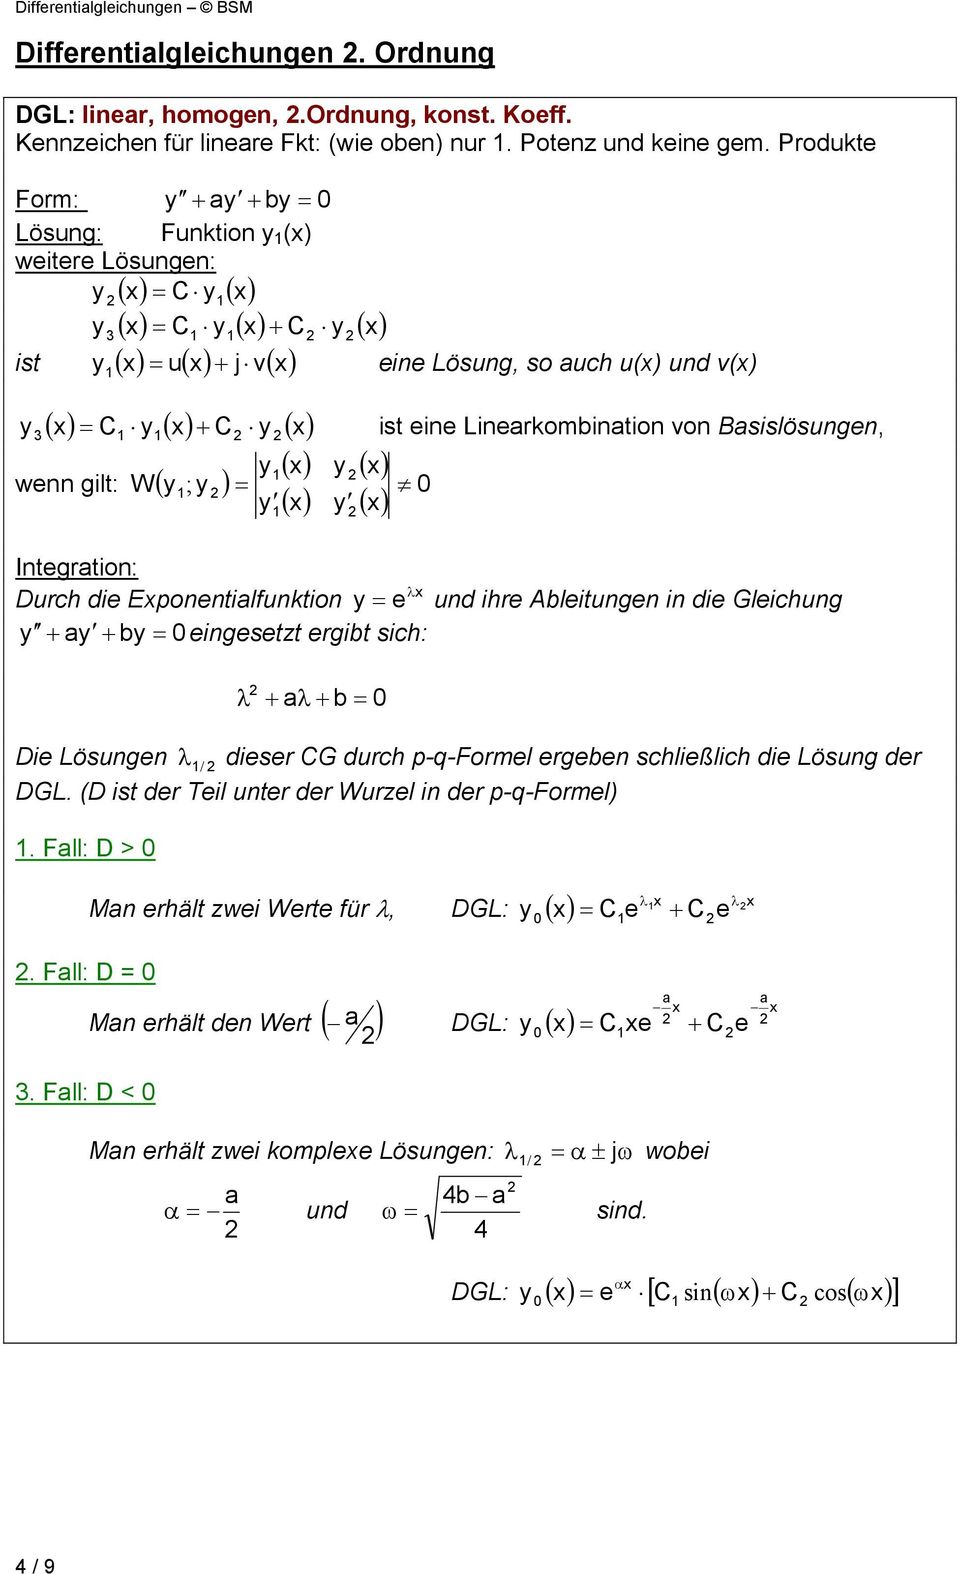 Durch die Eponentilfunktion e und ihre Ableitungen in die Gleichung + + b 0 eingesetzt ergibt sich: + + b 0 Die Lösungen / dieser CG durch p-q-formel ergeben schließlich die Lösung der DGL.